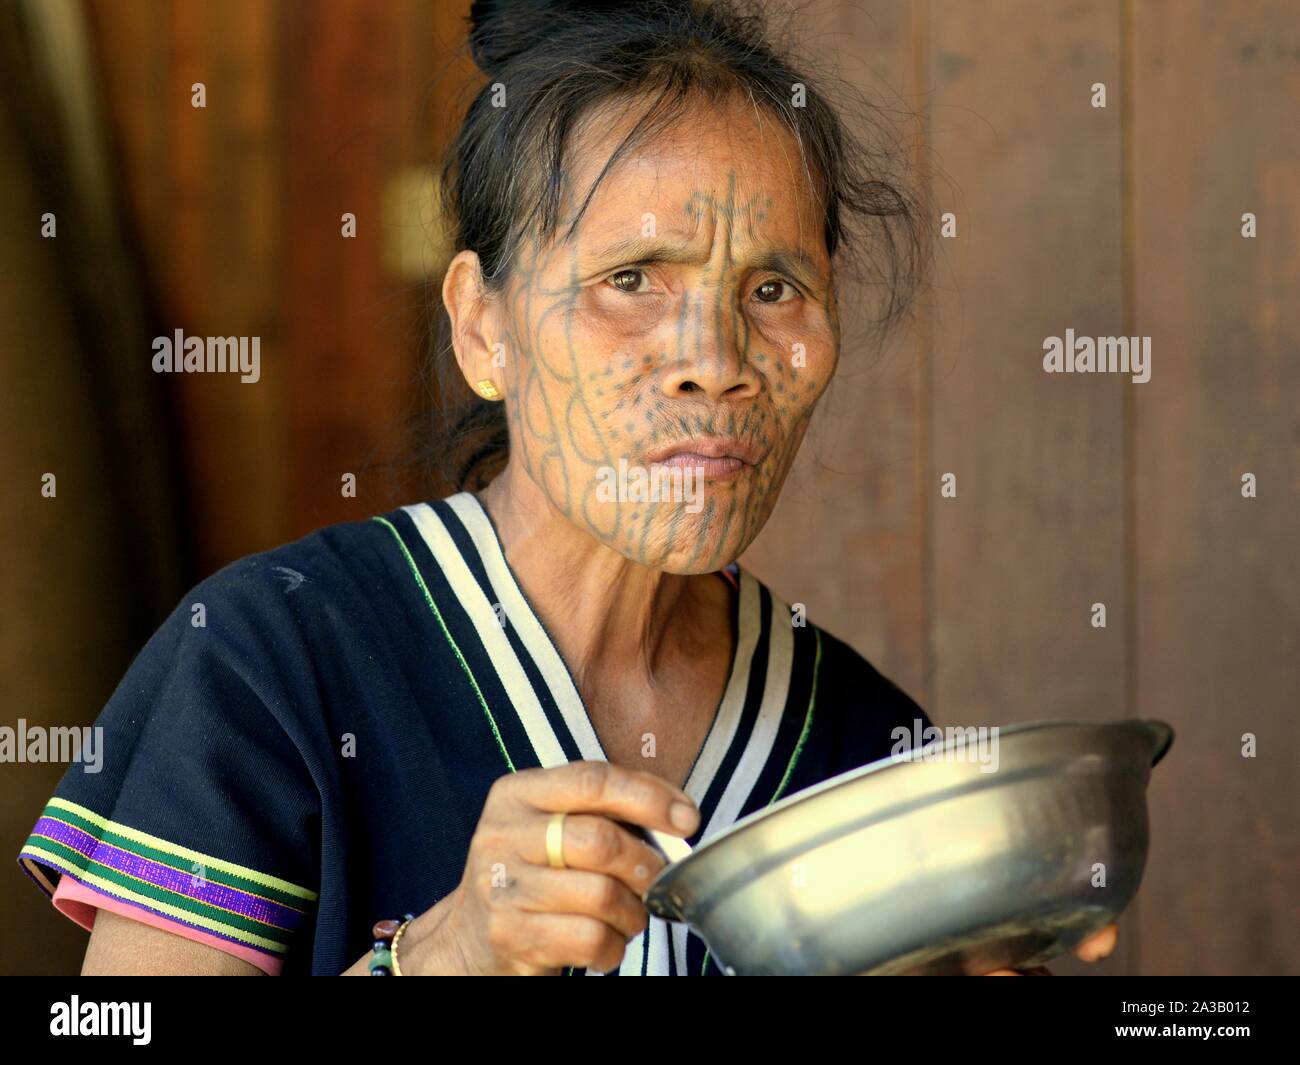 Im mittleren Alter Kinn Muun tribal Frau ('Spider Frau') mit klassischen Gesichtsbehandlung tattoo isst aus Edelstahl Schüssel und sieht in die Kamera. Stockfoto